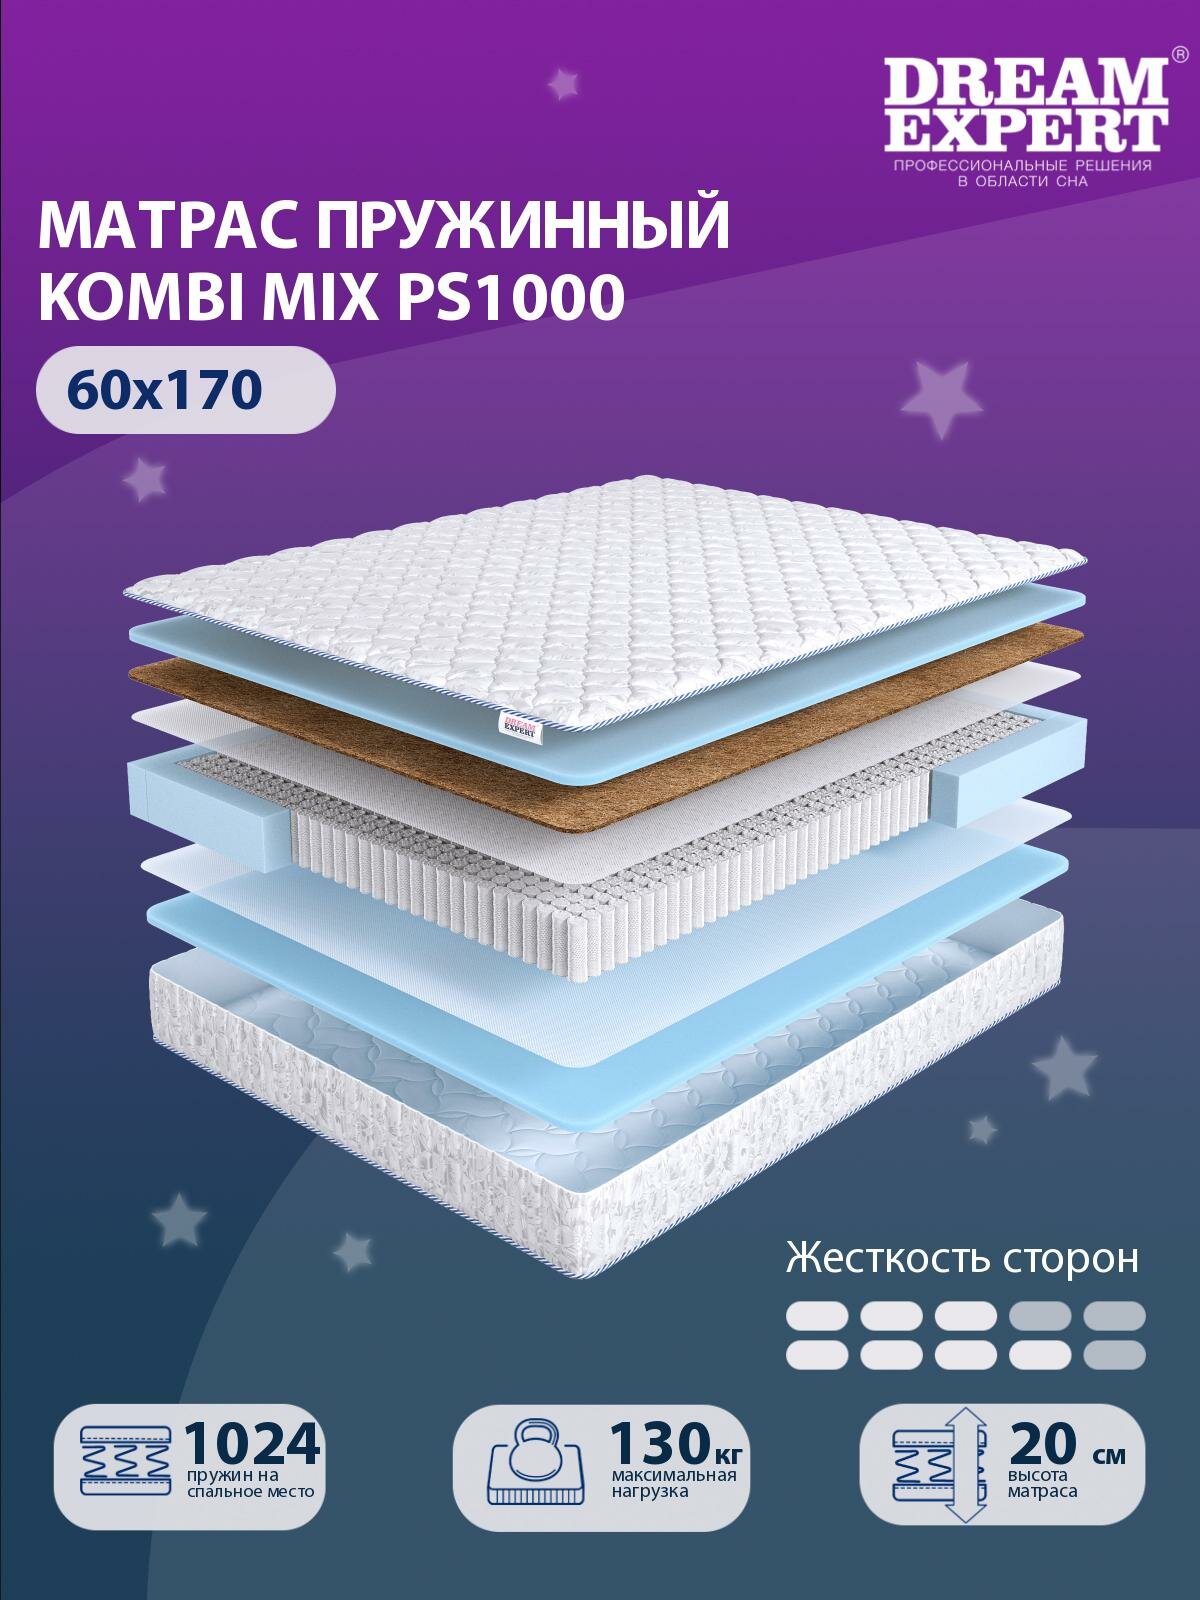 Матрас DreamExpert Kombi Mix PS1000 средней и выше средней жесткости, детский, независимый пружинный блок, на кровать 60x170